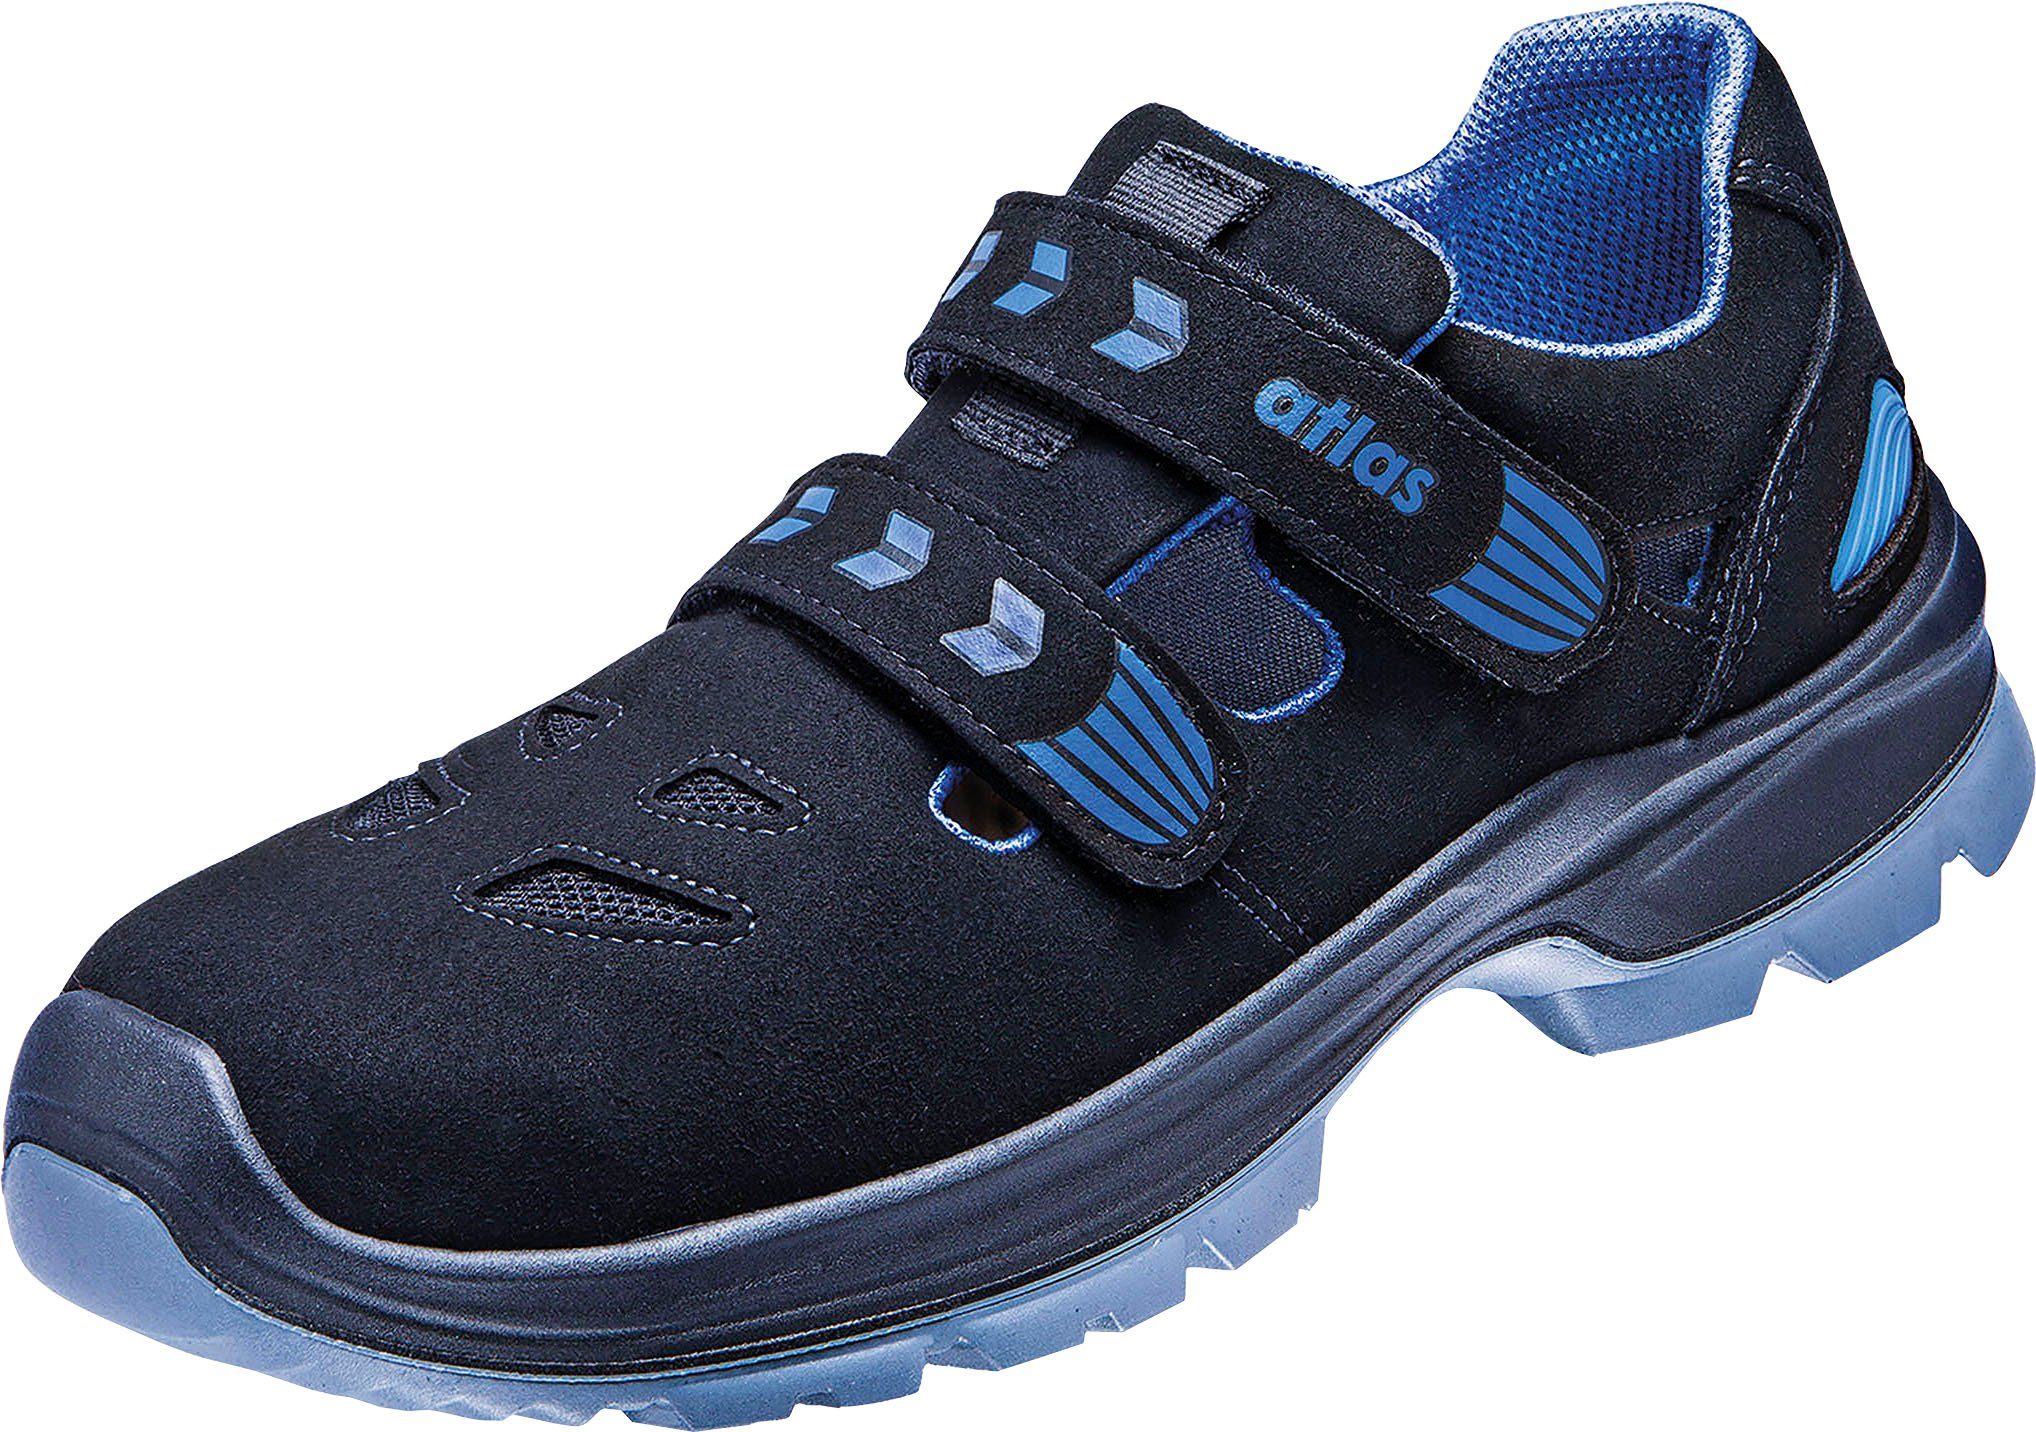 Atlas Schuhe Ergo-Med 360 Sicherheitsschuh Sandale, Schuhweite 14, Sicherheitsklasse S1